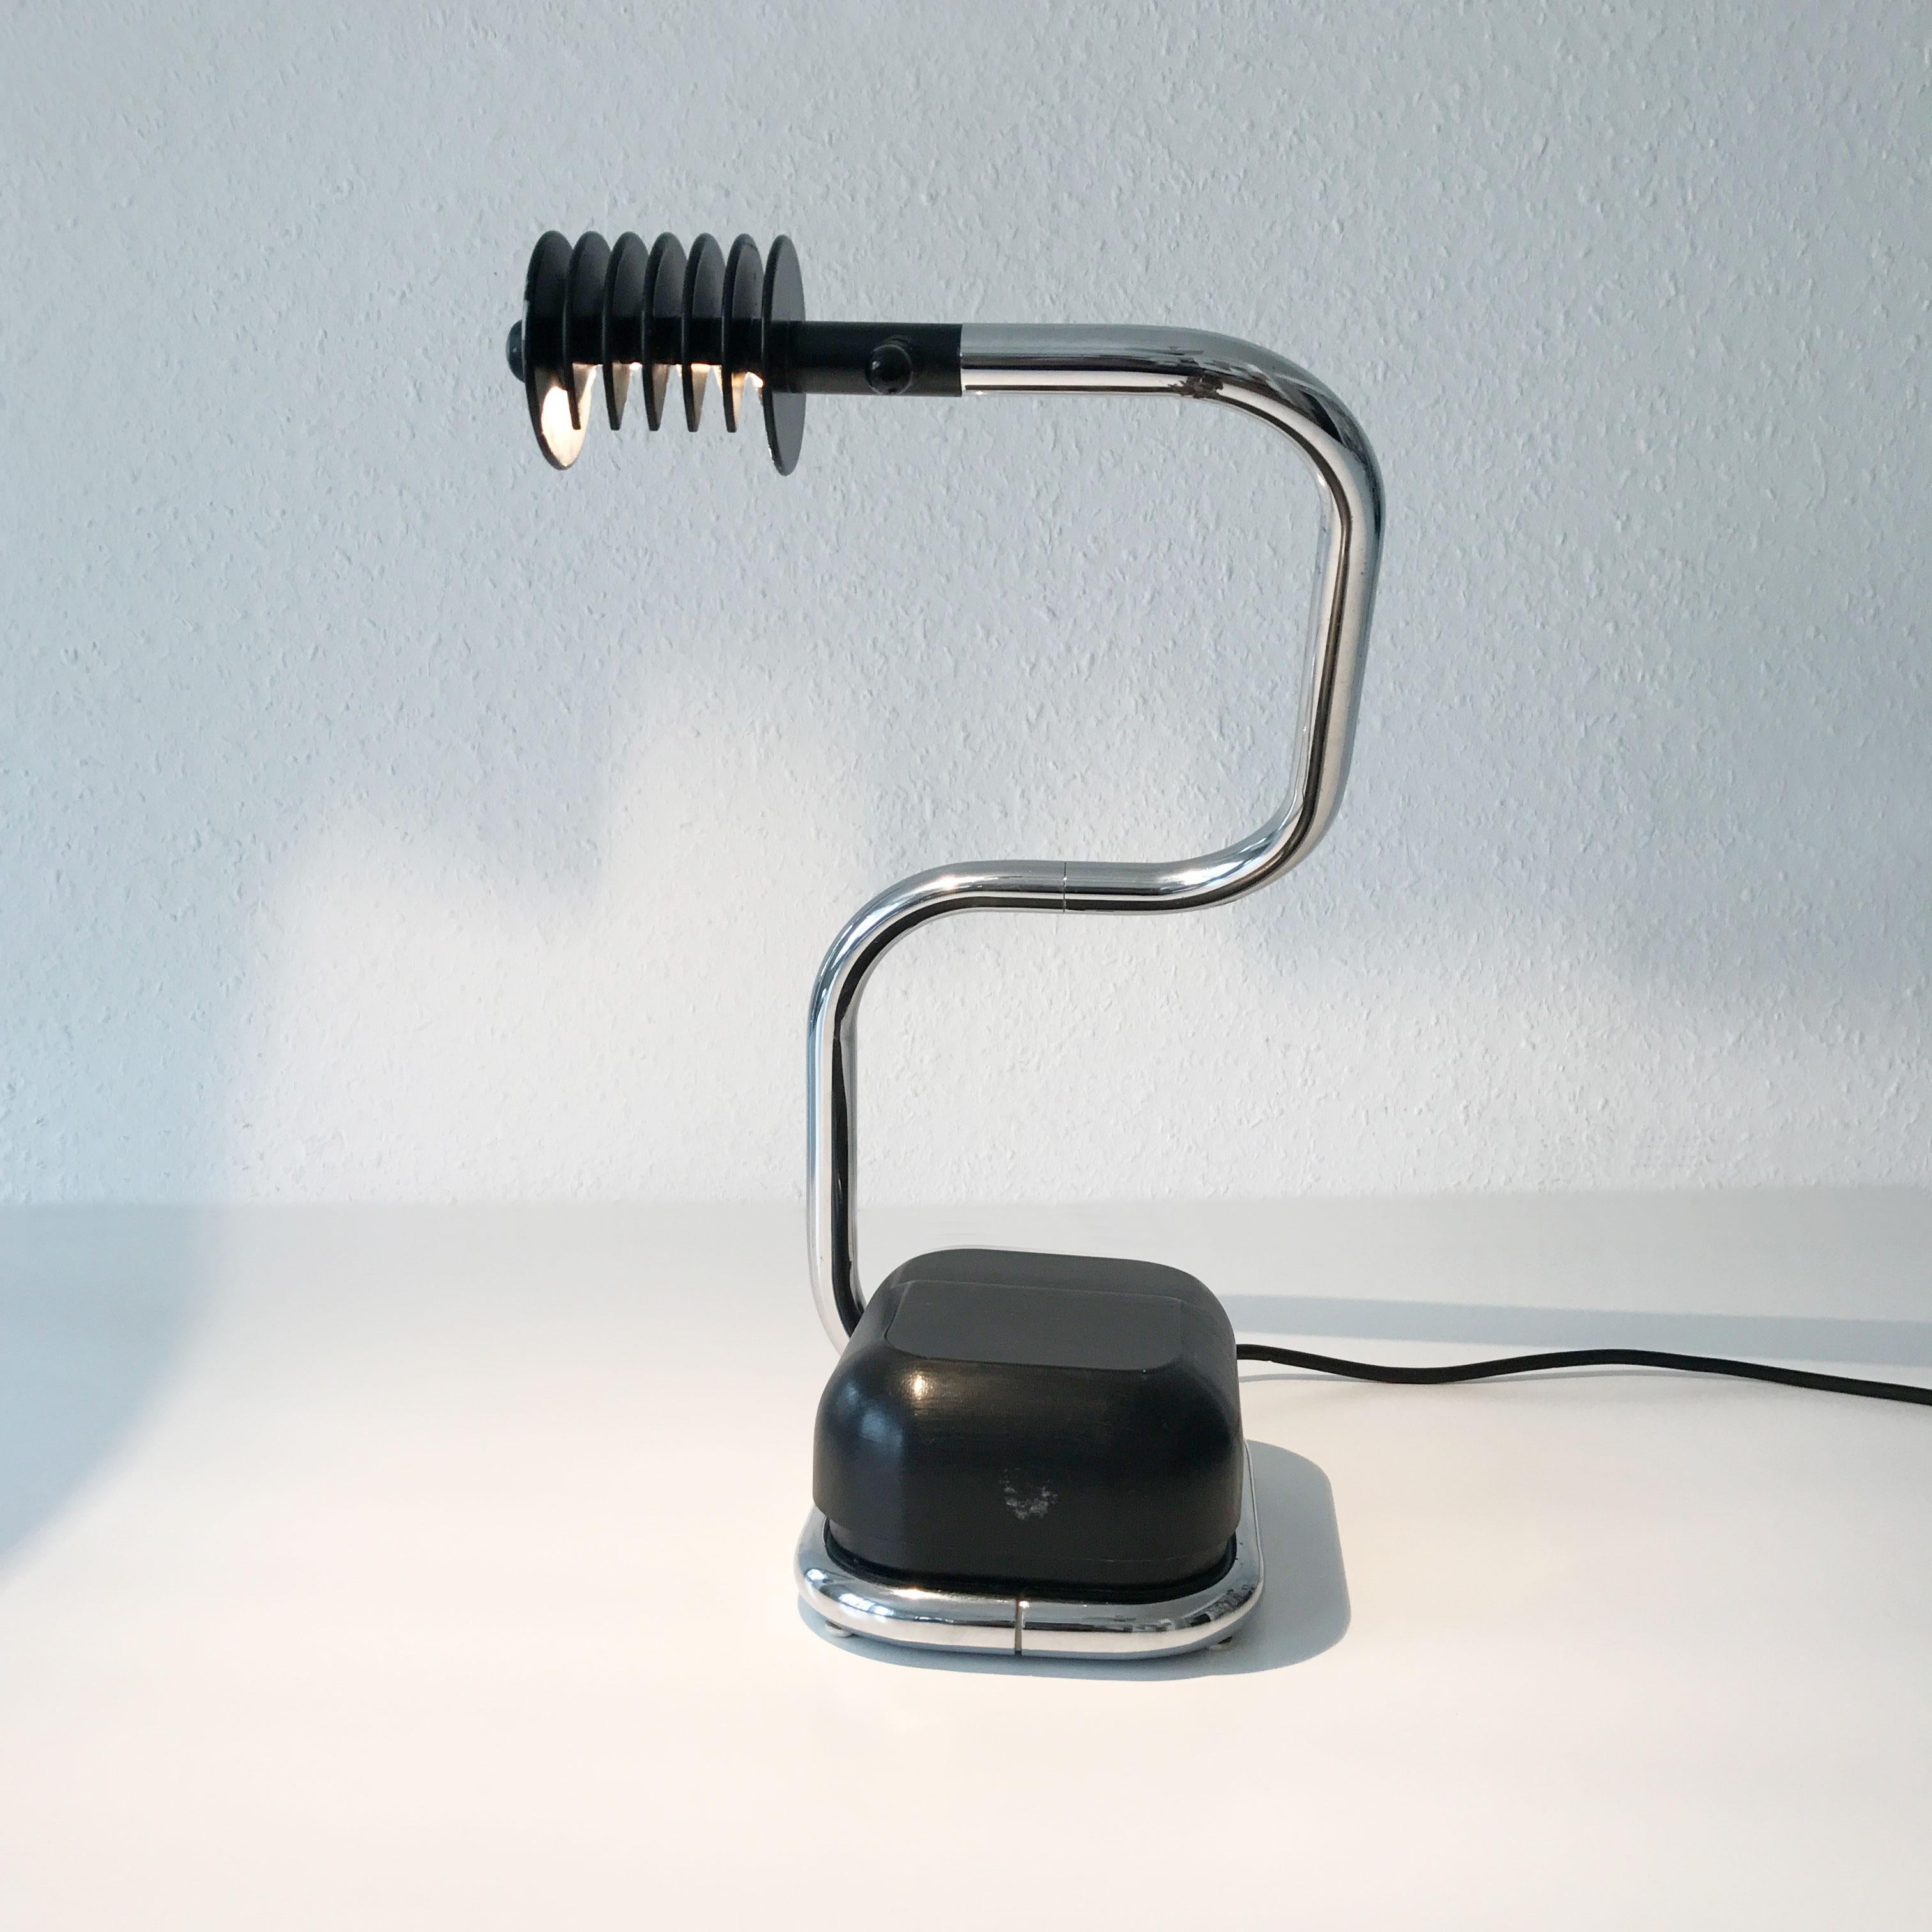 Extrêmement rare lampe de table Lucciola de style moderne du milieu du siècle. Conçu par Fabio Lenci, 1971 et fabriqué par Harvey Guzzini, en Italie, dans les années 1970.

Cette élégante lampe de table est exécutée en tube d'acier chromé, métal